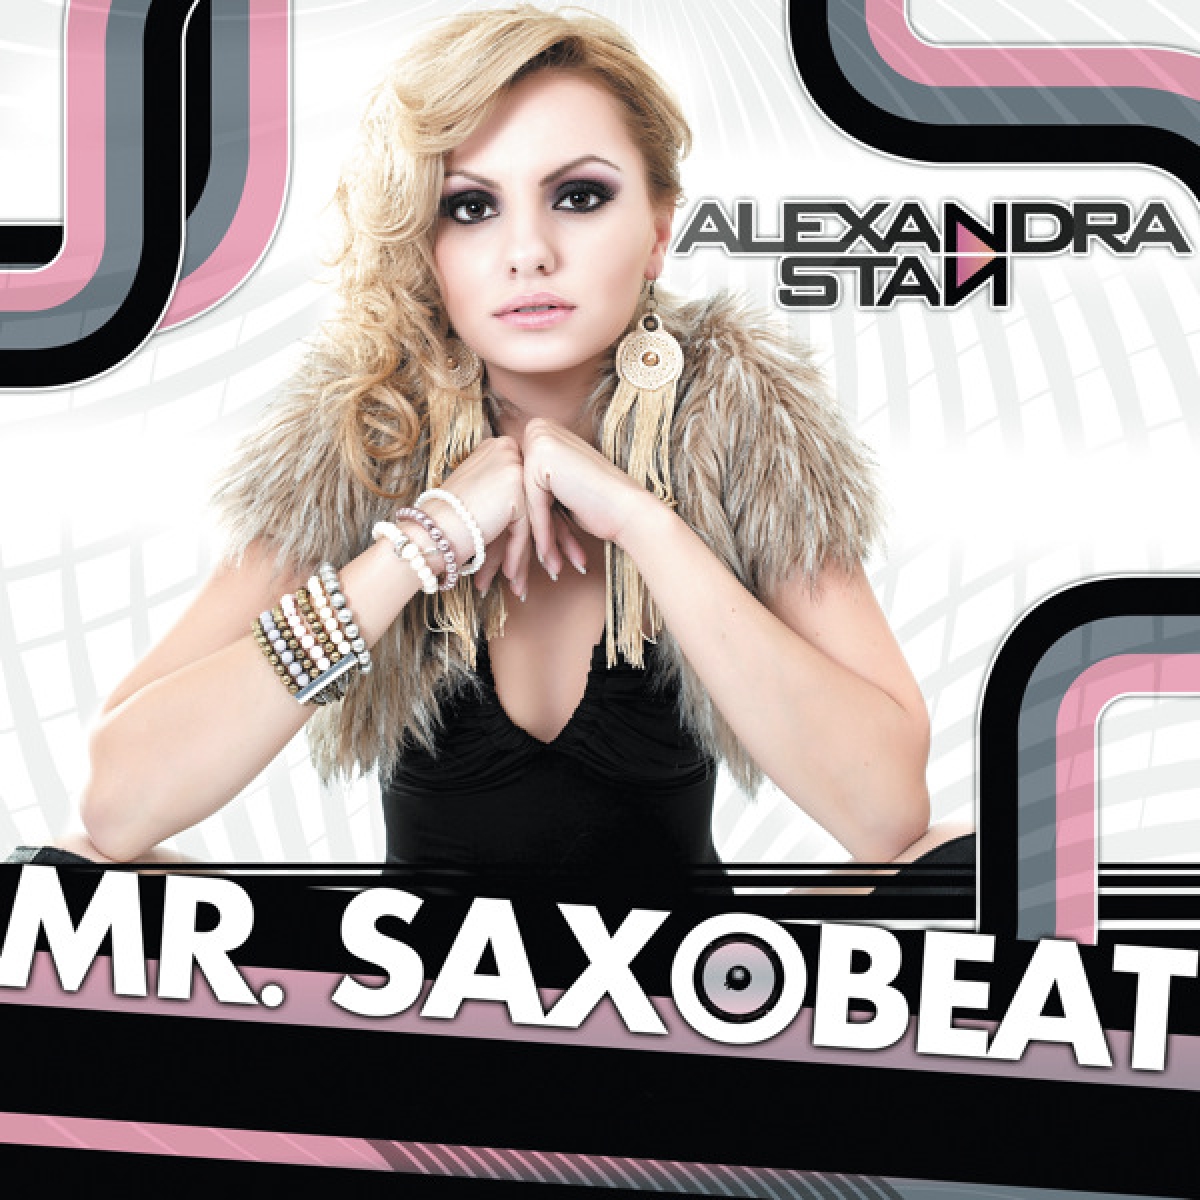 ALEXANDRA STAN - Mr Saxobeat